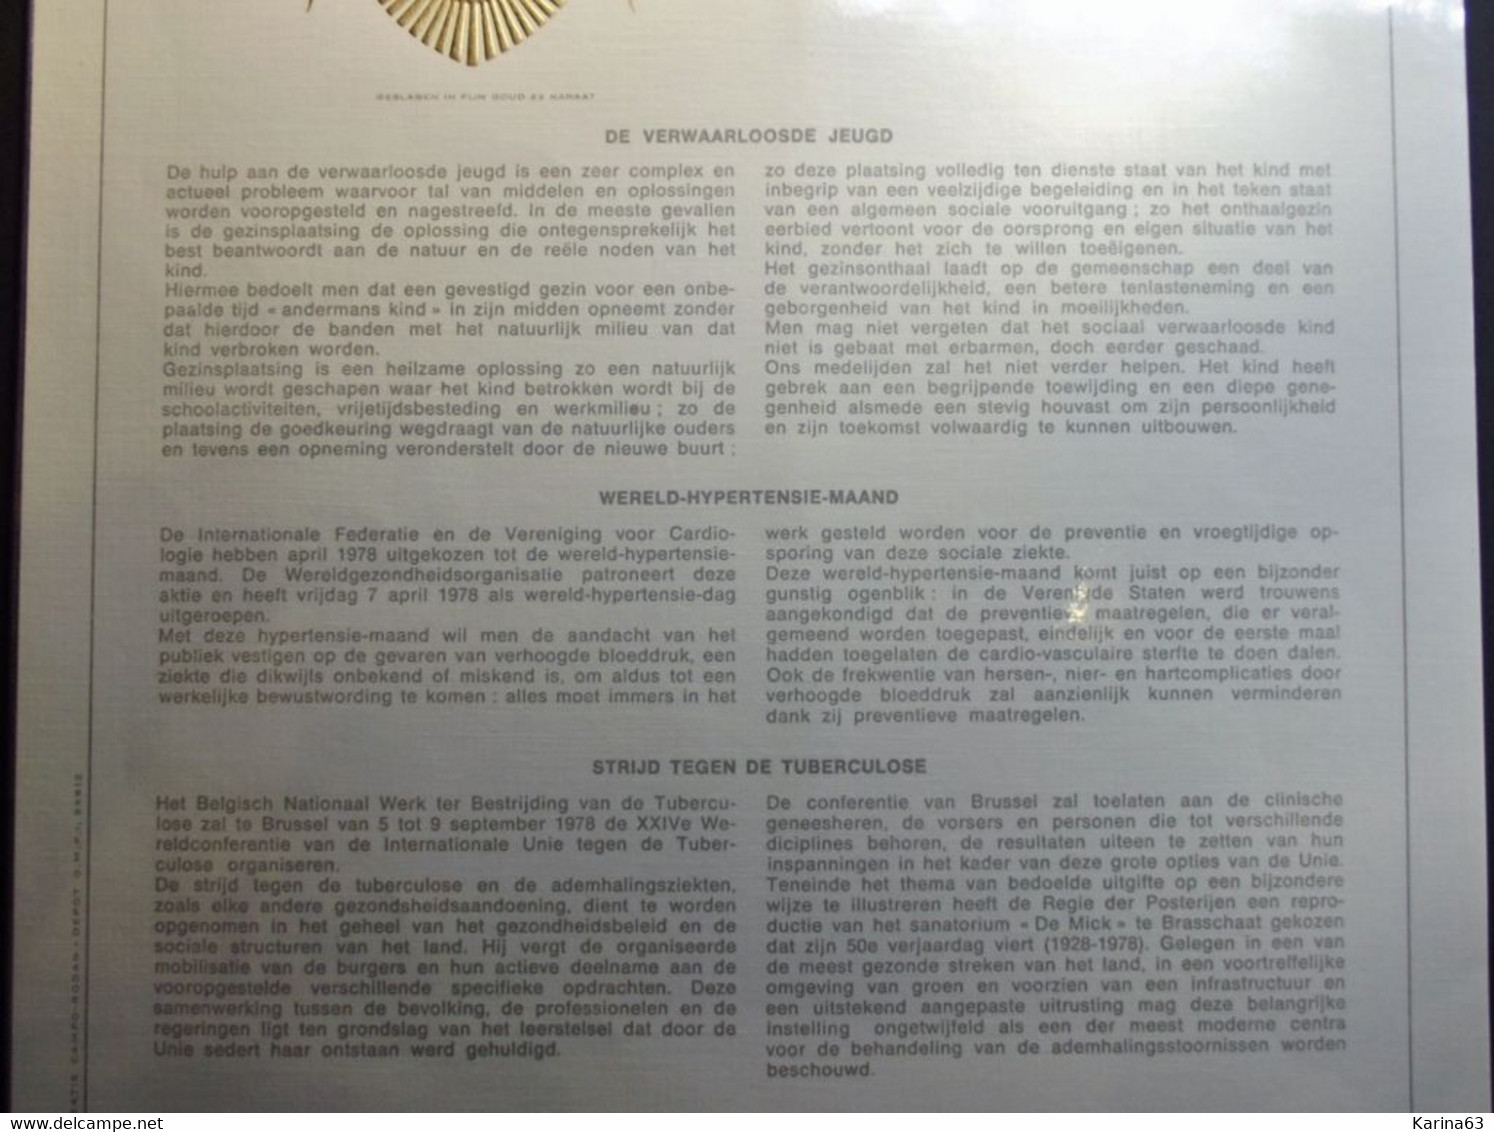 Belgie Belgique - 1978 - OPB/COB 1881/83  -  Philantropique - Feuillet D'art Rodan - Frappé Or Fin/  - Limited Edition - Feuillets De Luxe [LX]